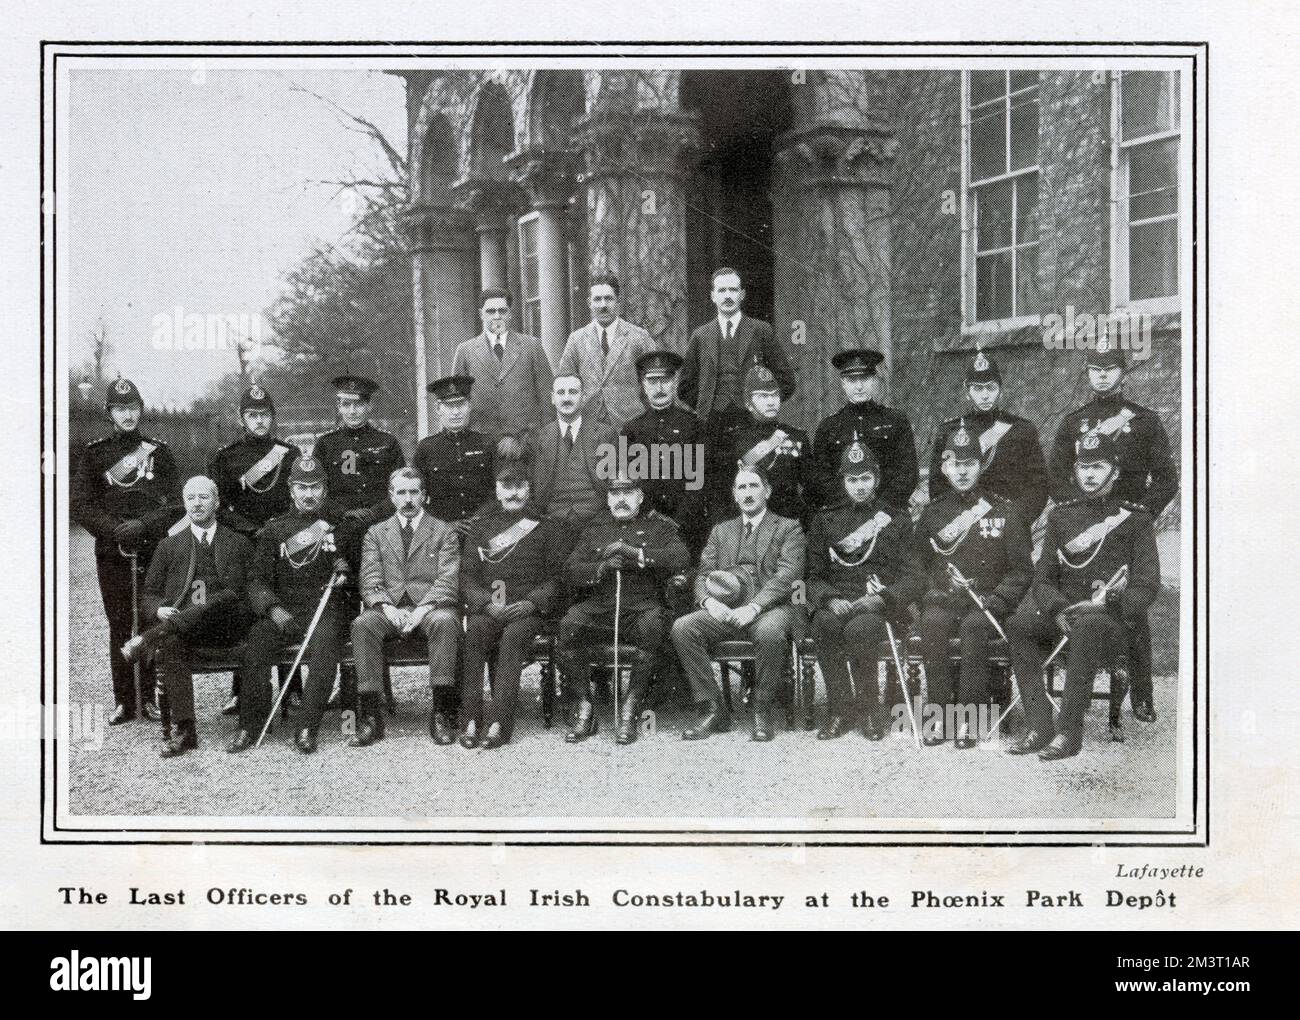 Gli ultimi ufficiali del Royal Ulster Constabulary (RUC) presso il Phoenix Park Depot. Foto Stock